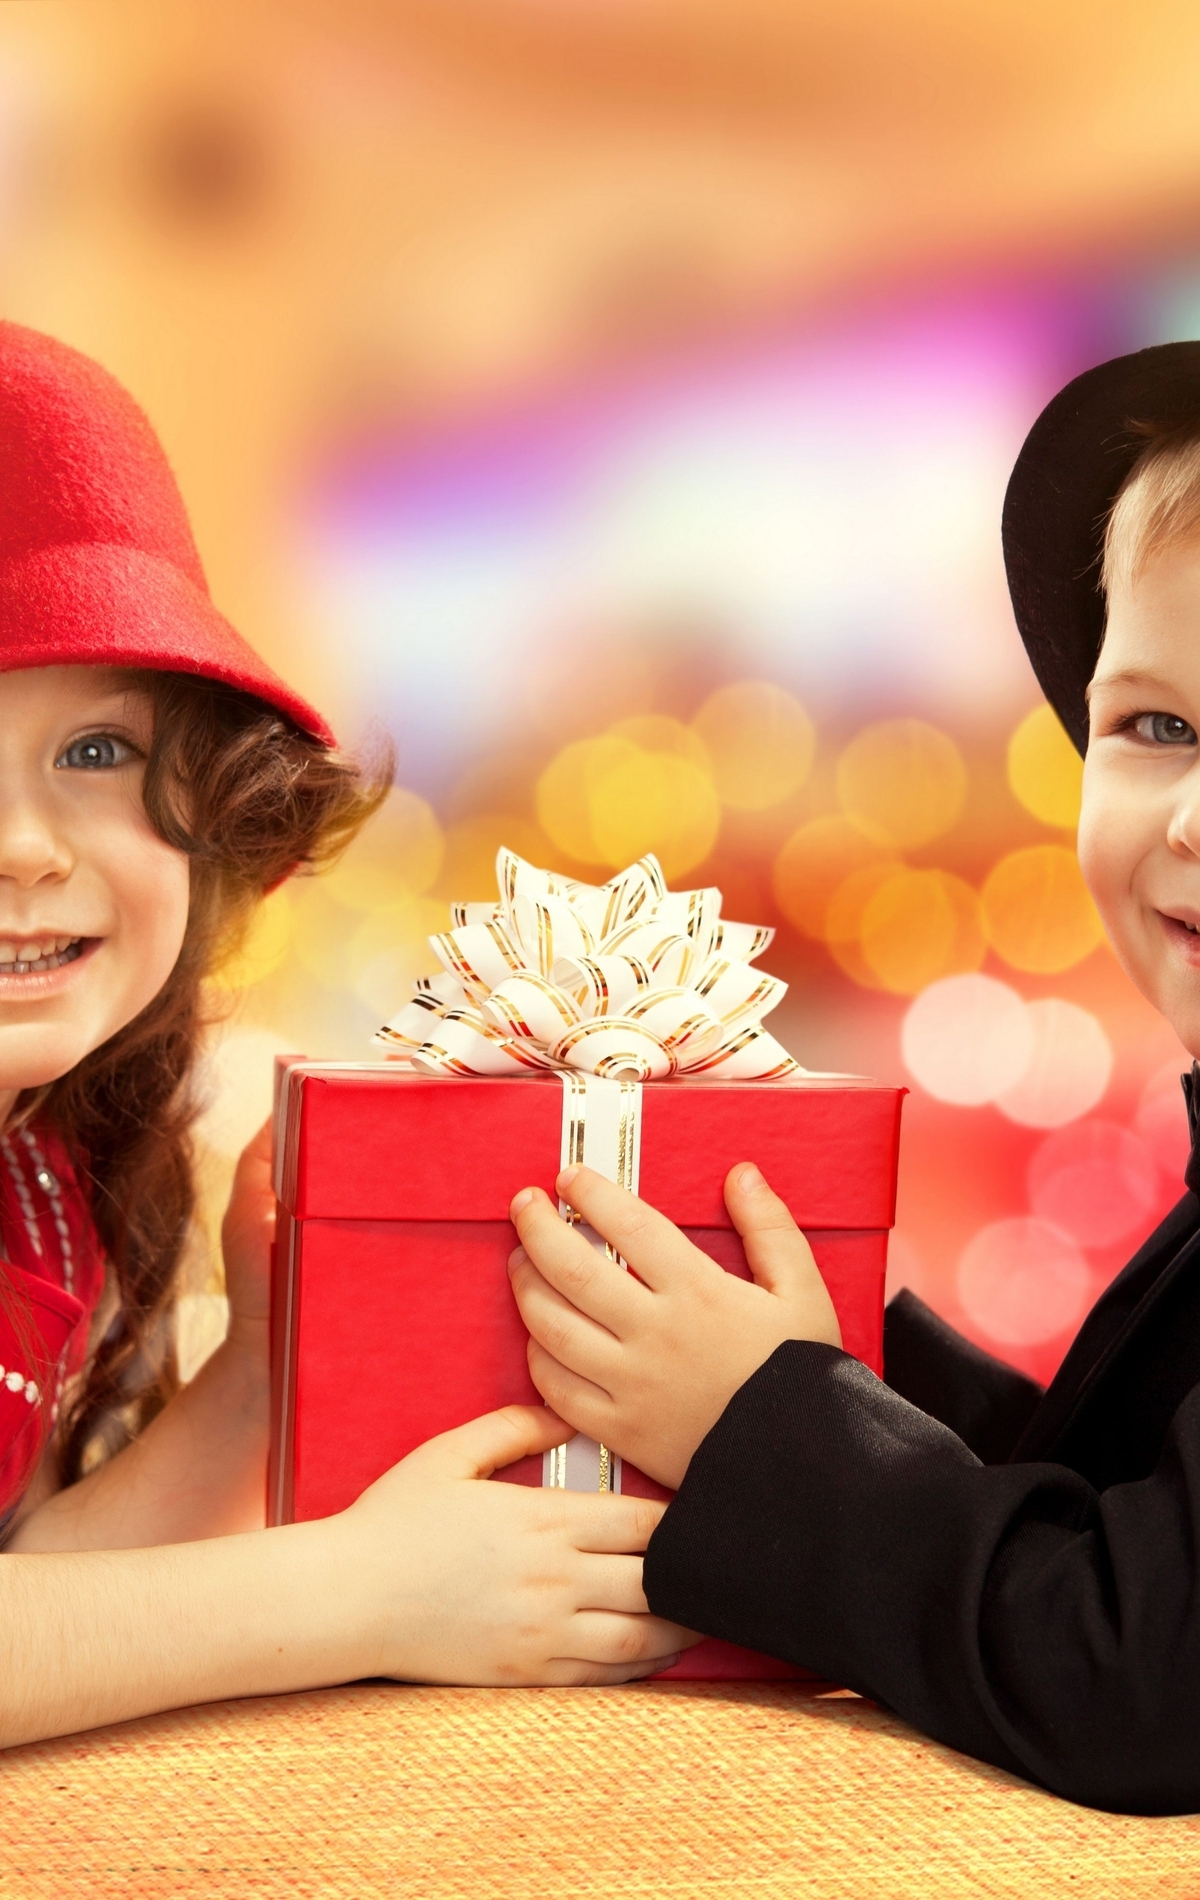 Картинка: Мальчик, девочка, дети, шляпа, подарок, праздник, улыбка, настроение, счастье